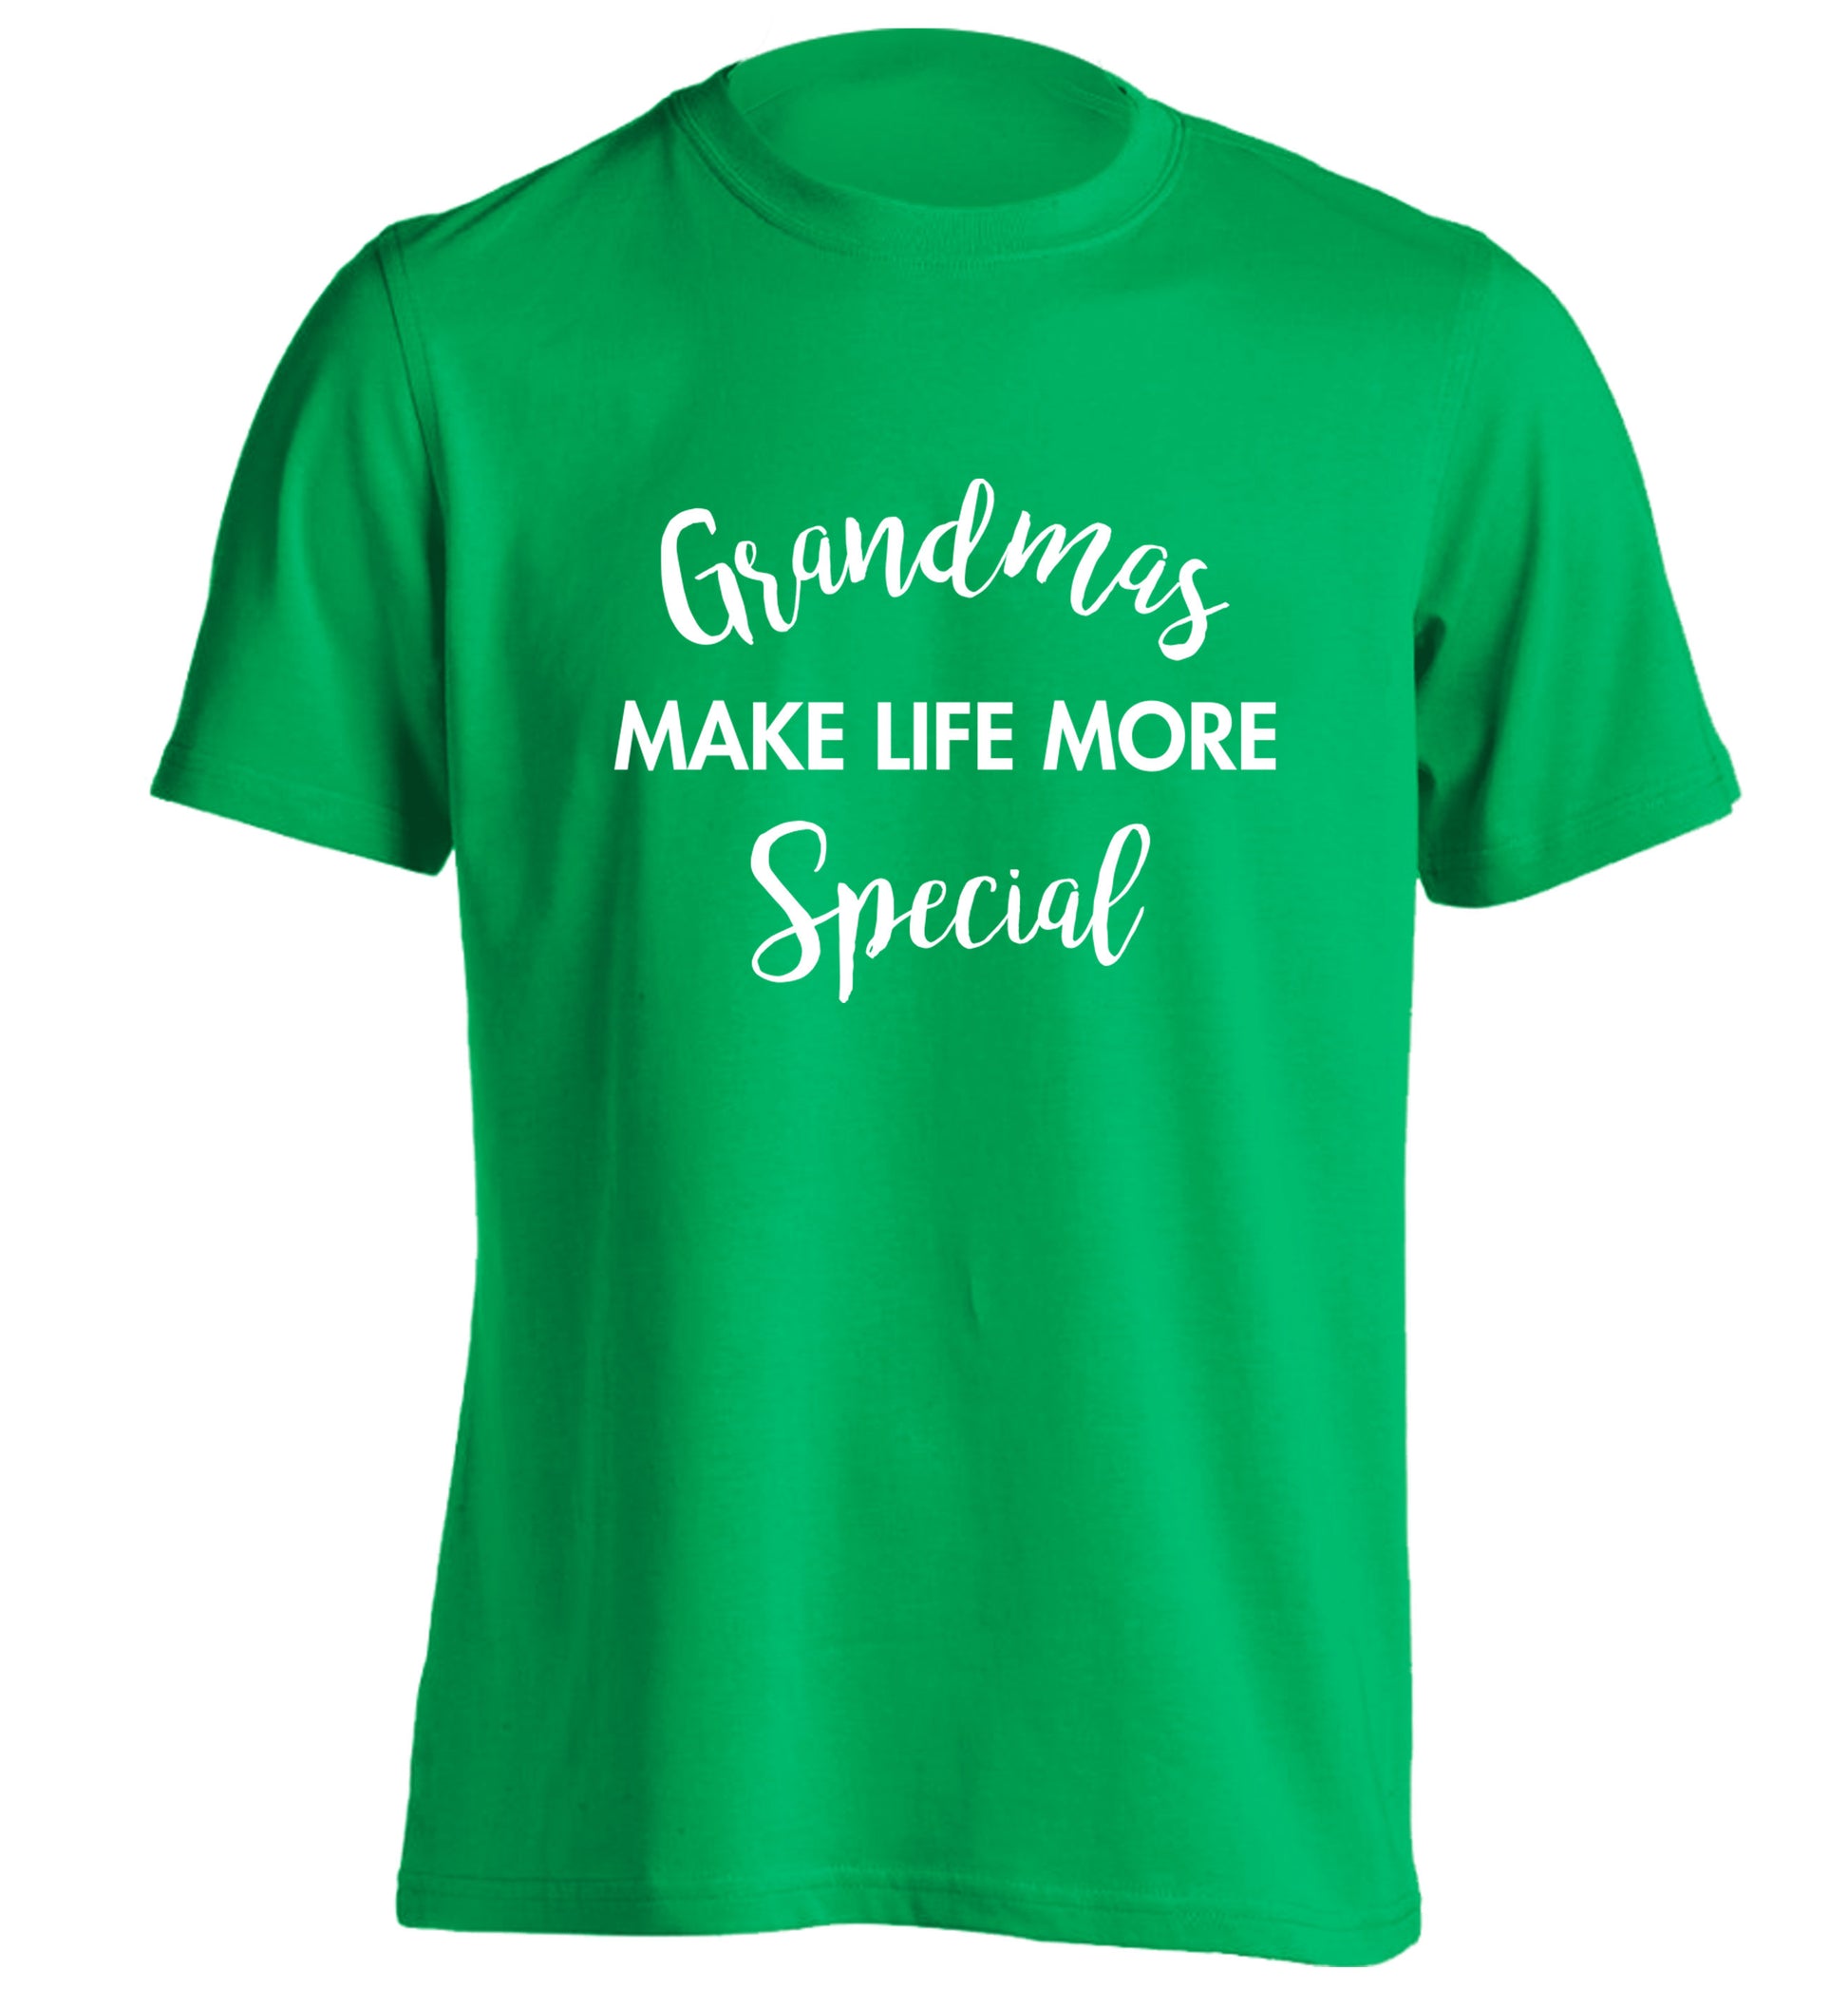 Grandmas make life more special adults unisex green Tshirt 2XL